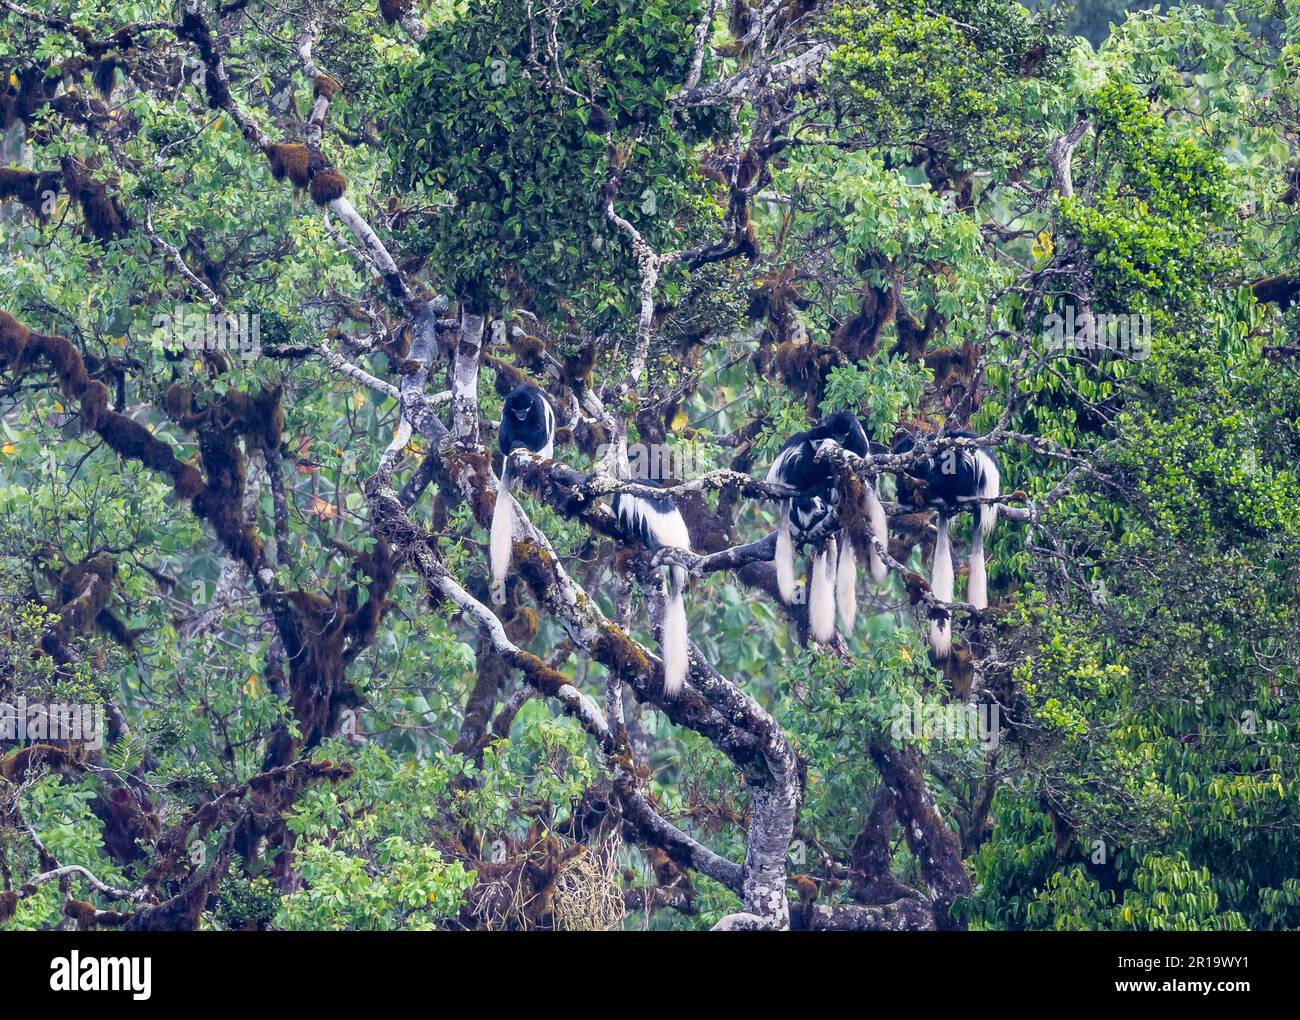 Une famille de singes Guoreza mangés (Colobus guereza) s'est penchée sur un grand arbre. Parc national du Mont Kenya, Kenya, Afrique. Banque D'Images